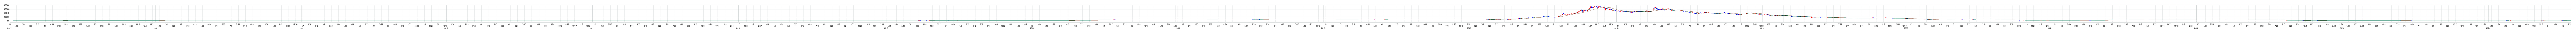 ペッパーフードサービスの株価チャート